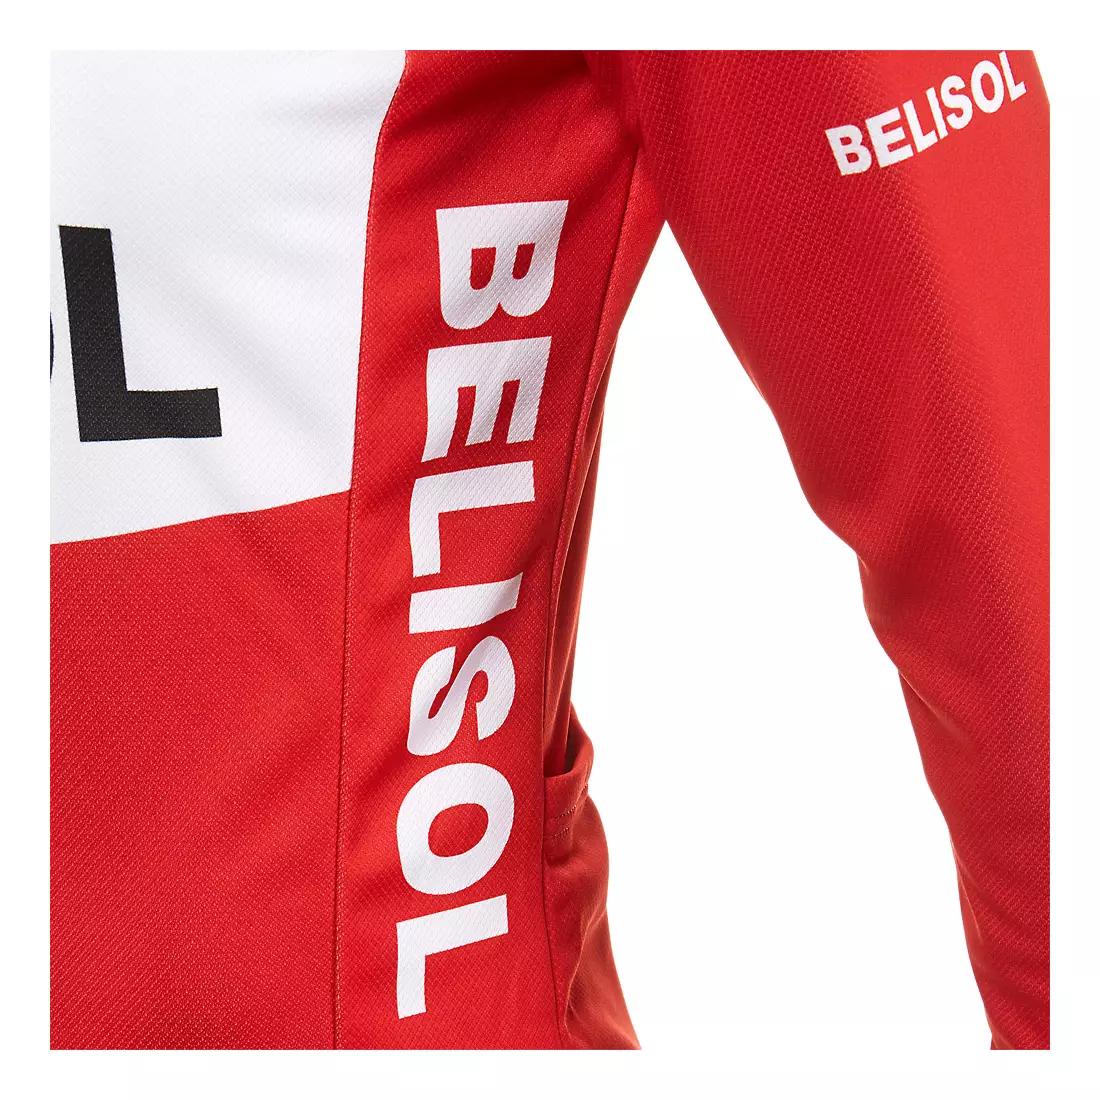 VERMARC - LOTTO BELISOL 2014 Radsport-Sweatshirt